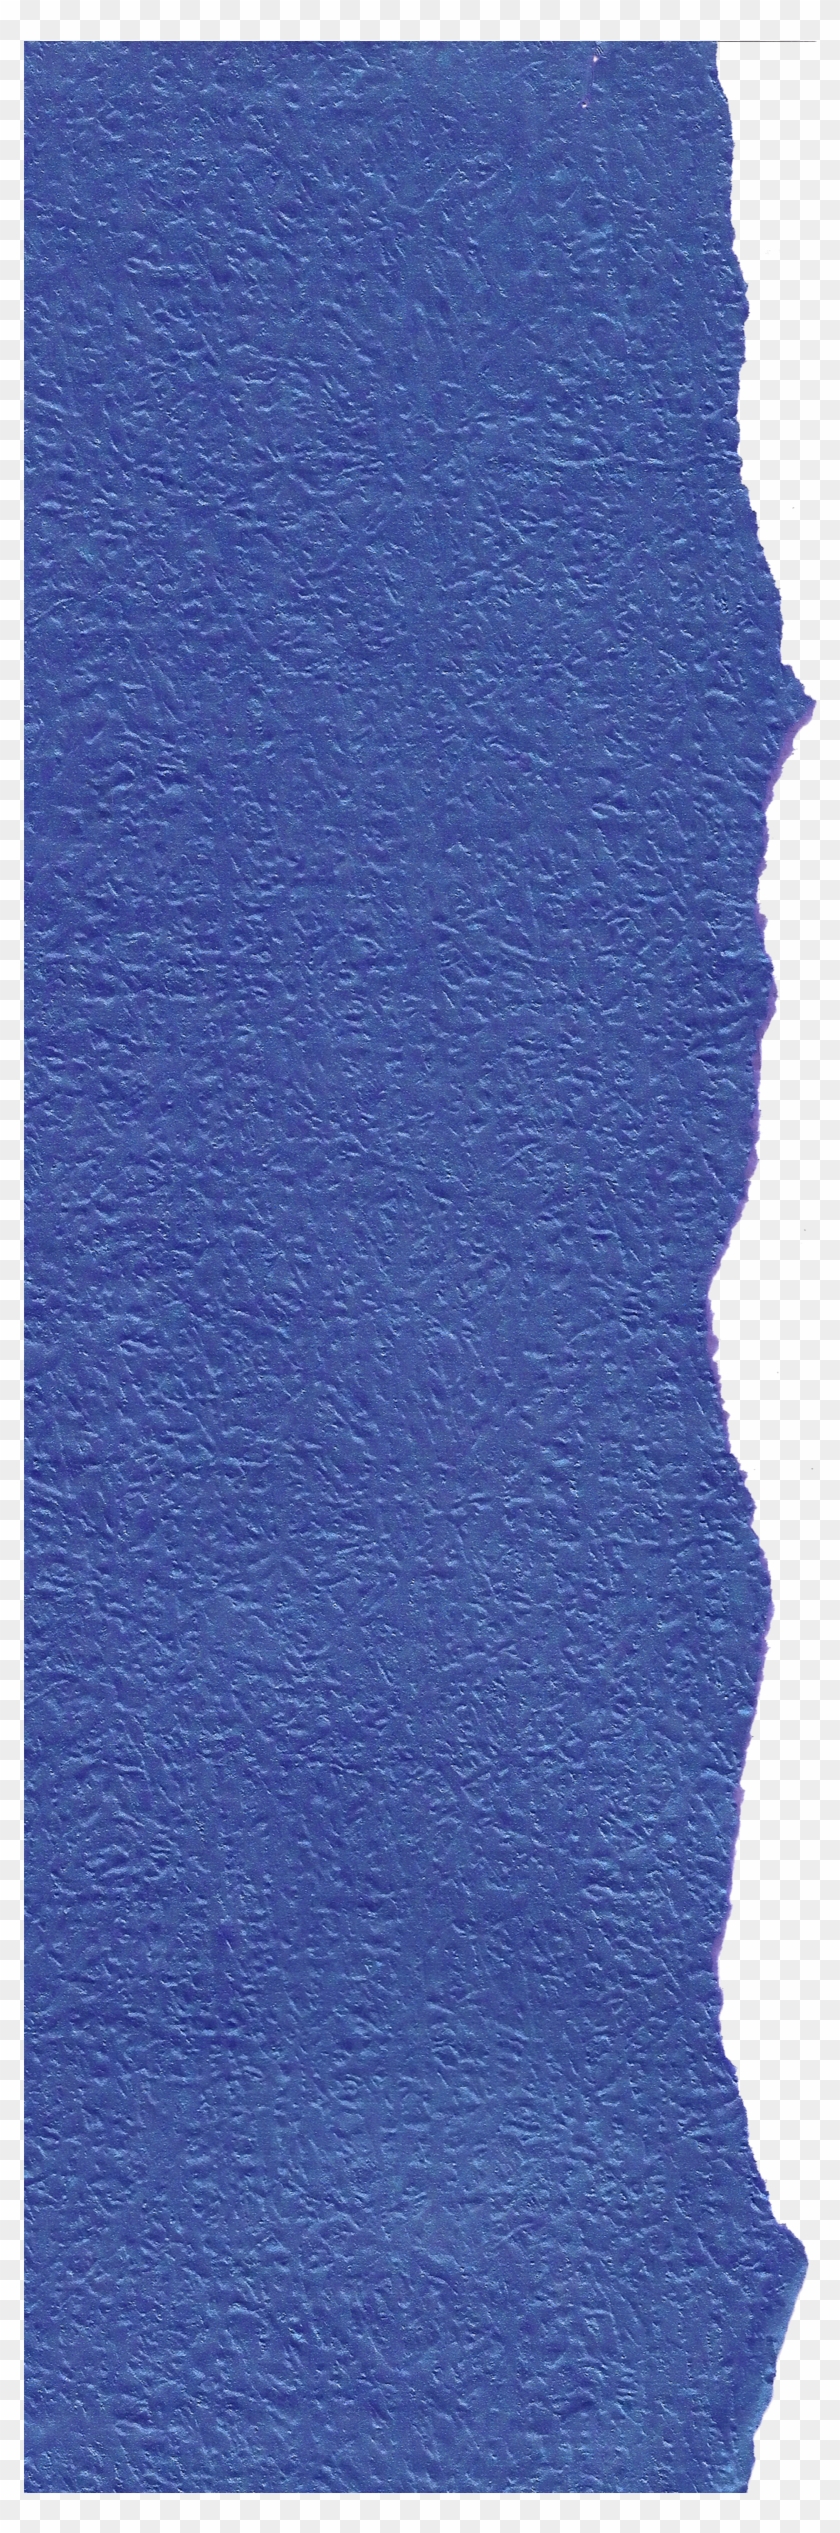 Torn Paper Plantilla Psd De Papel Rasgado Clipart - Blue Torn Paper Png Transparent Png #581718